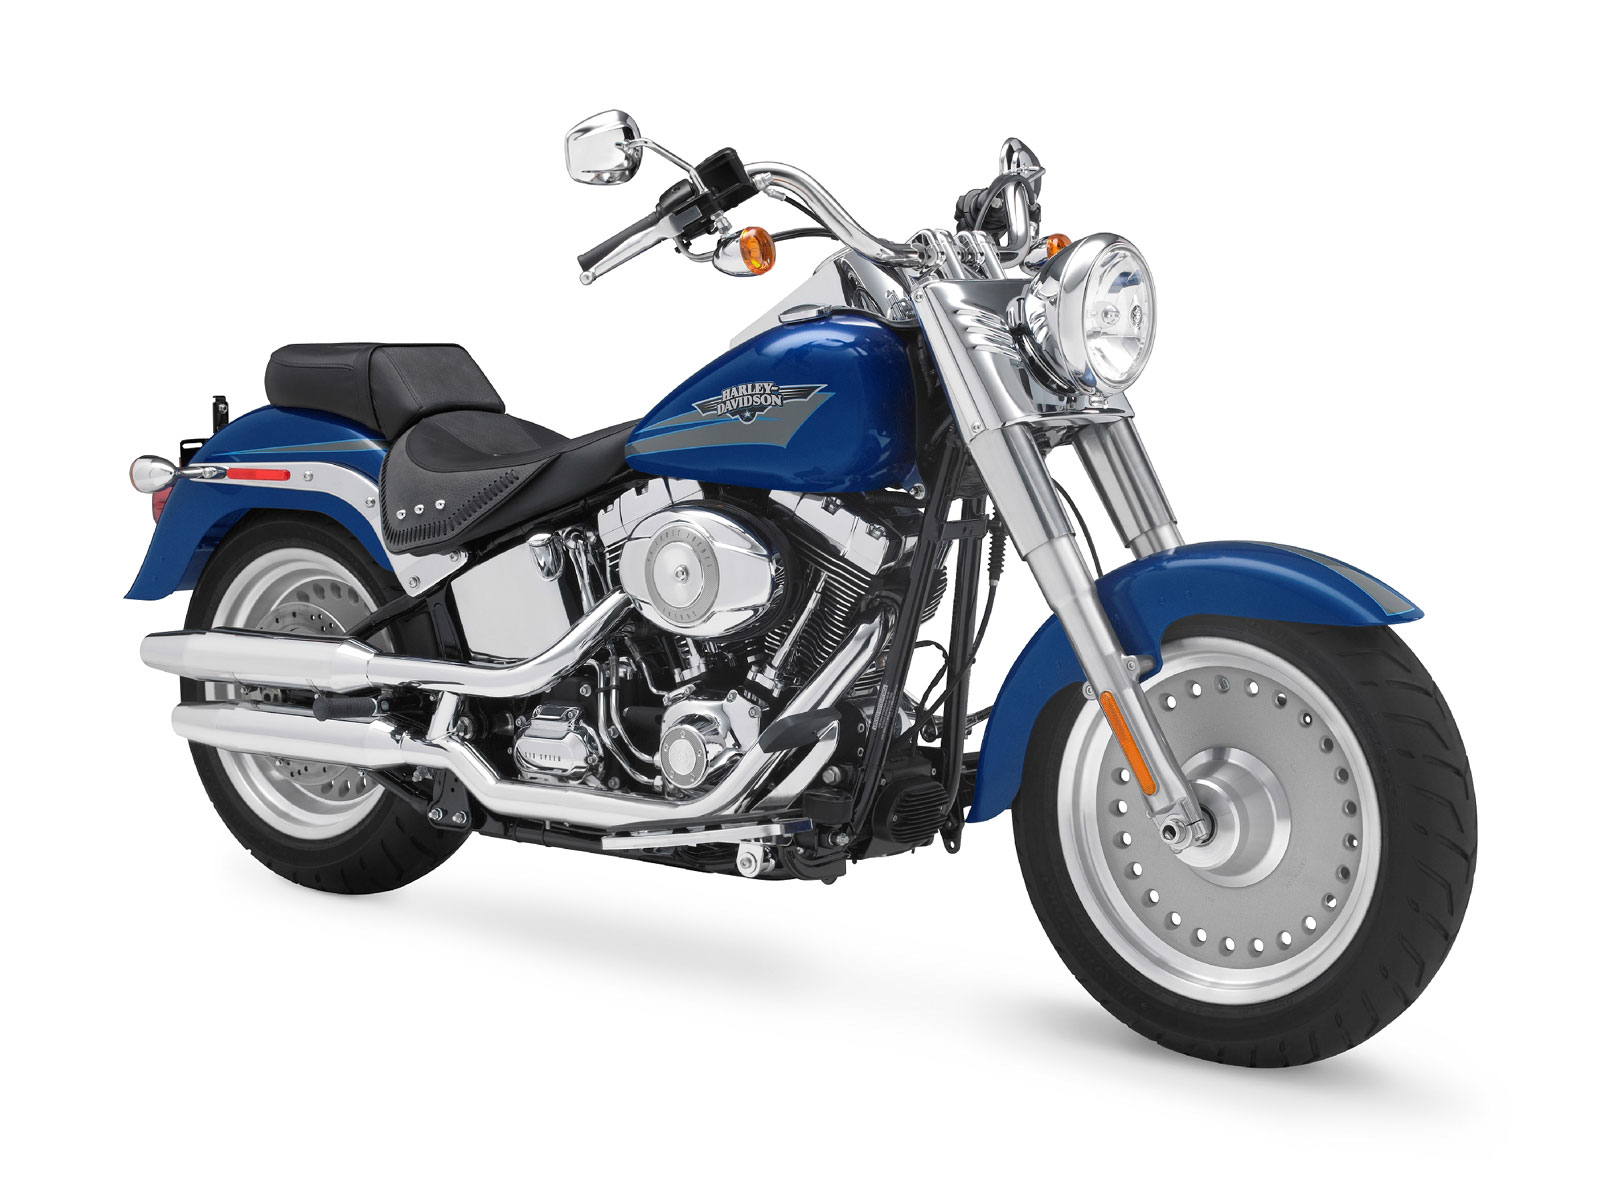 17 Harley Davidson Fatboy Motor Ide Top